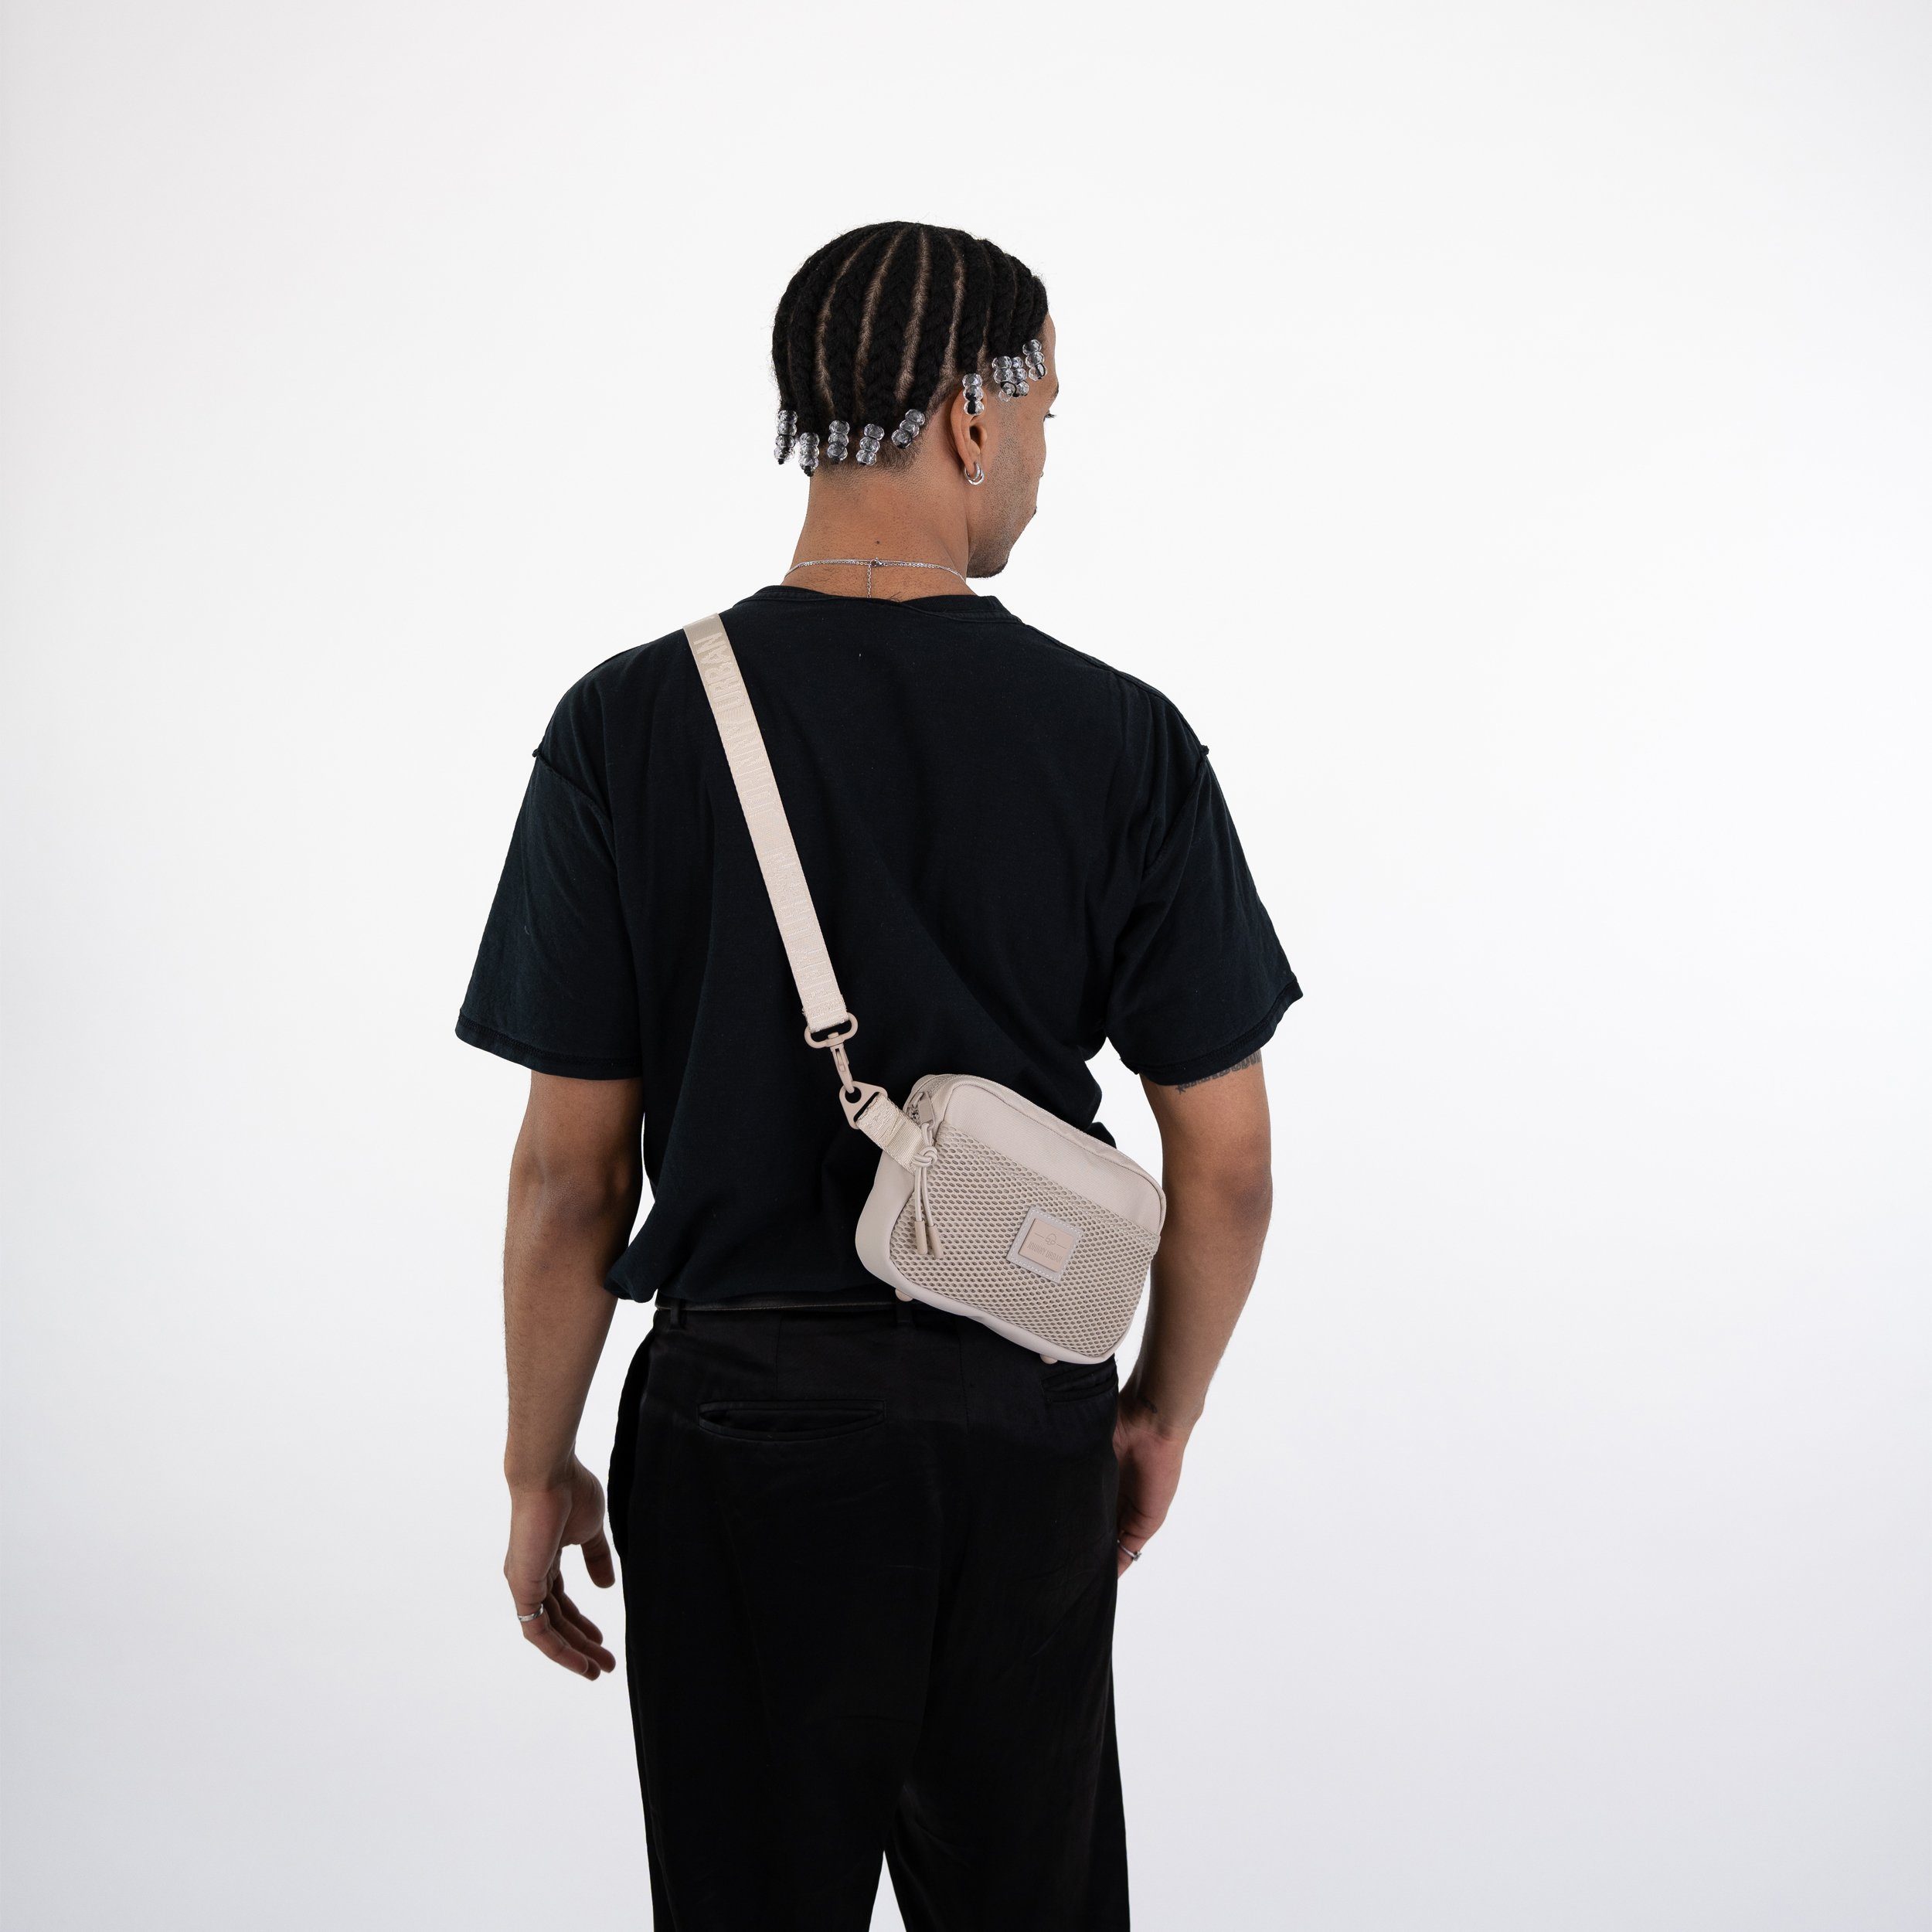 Johnny Urban Handtasche Elliot Handtasche Stylische Damen, Verschiedene Wasserabweisend Sand Tragemöglichkeiten, Umhängetasche